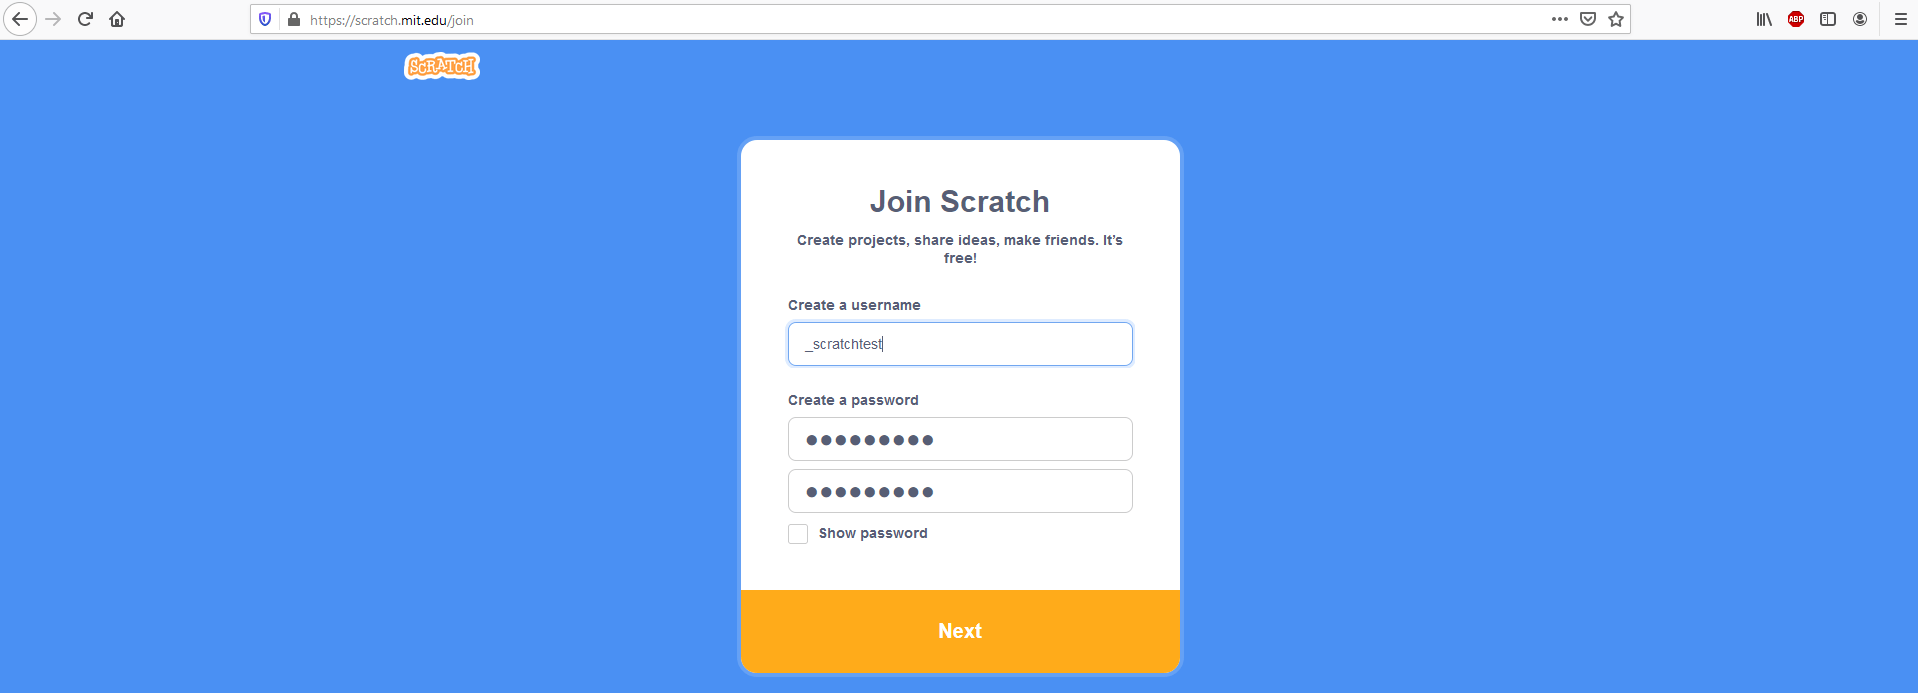 “Únete a Scratch”: ventana para crear una cuenta de usuario en Scratch